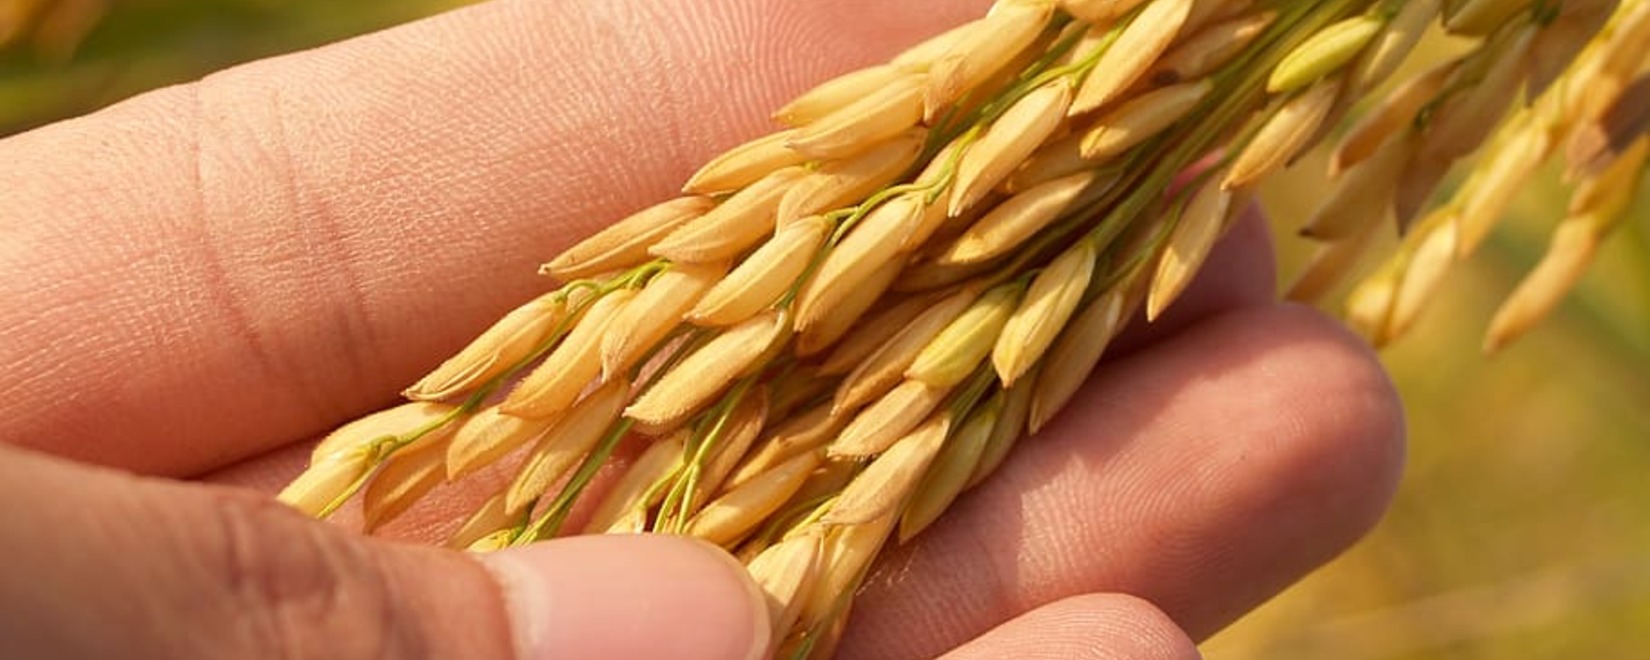 Международный совет по зерну (IGC) повысил прогноз валового сбора зерна в РФ до 125,5 млн тонн